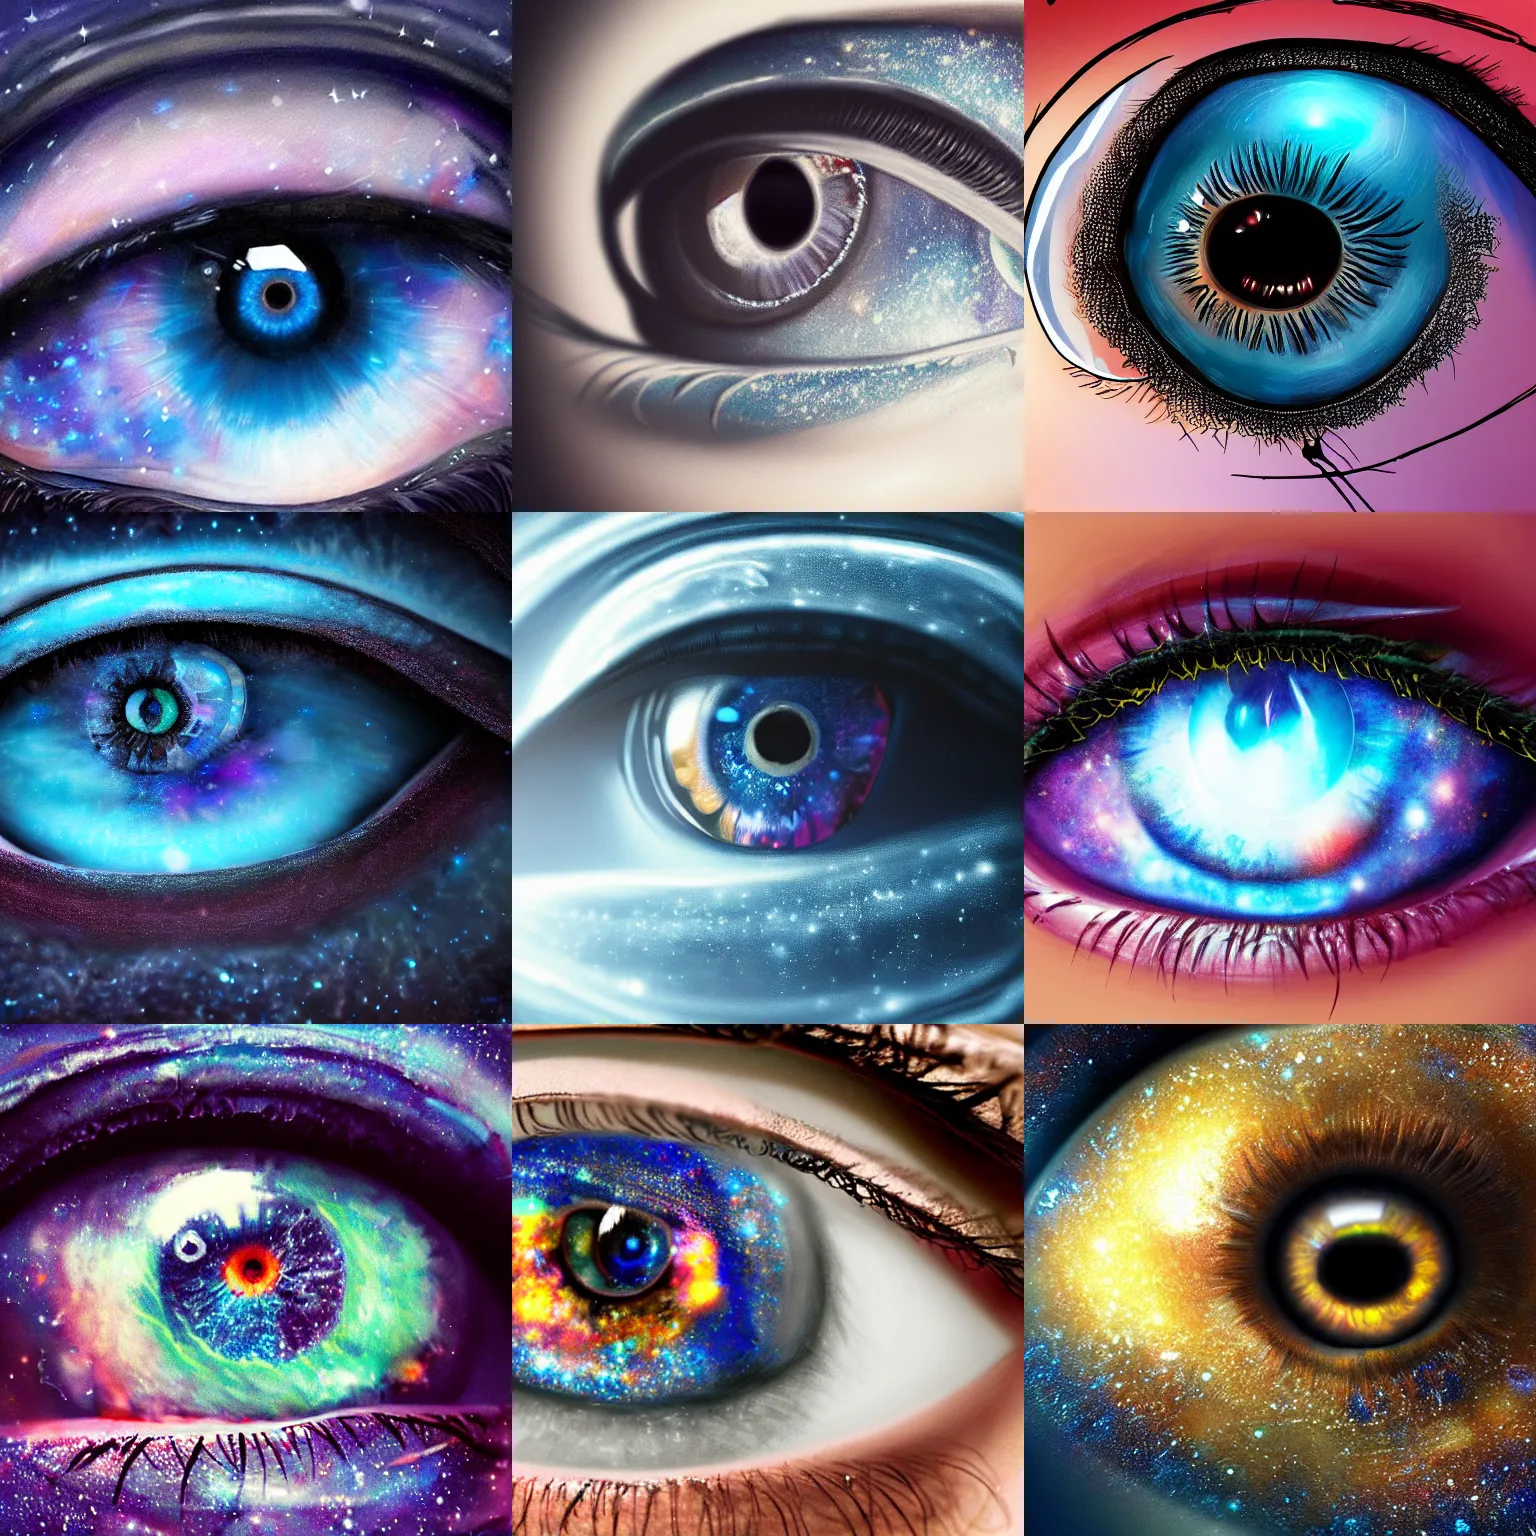 Prompt: a galaxy inside of an eye, beautiful eye, eye, eye of a woman, realistic eye, ultra realistic, beautiful eye, digital art, trending on artstation